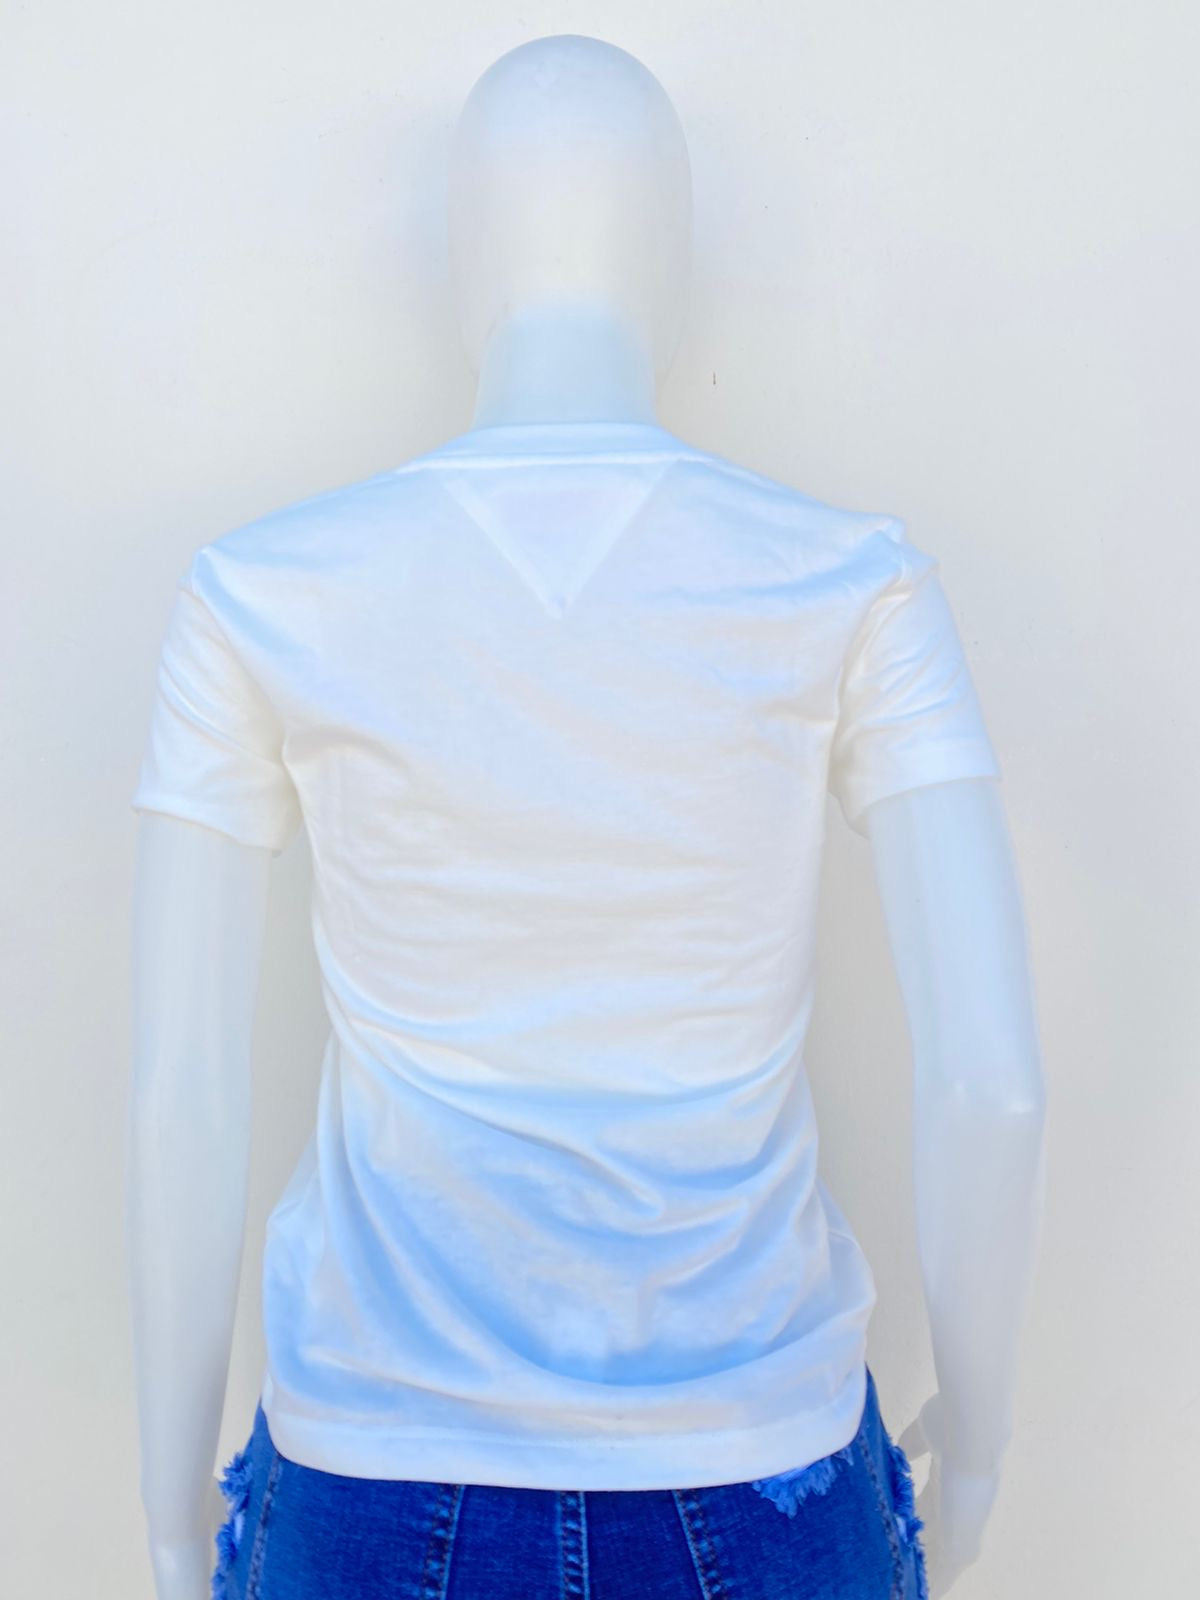 T-shirt Tommy Hilfiger original blanco con letras TOMMY WATER POLO en azul marino.